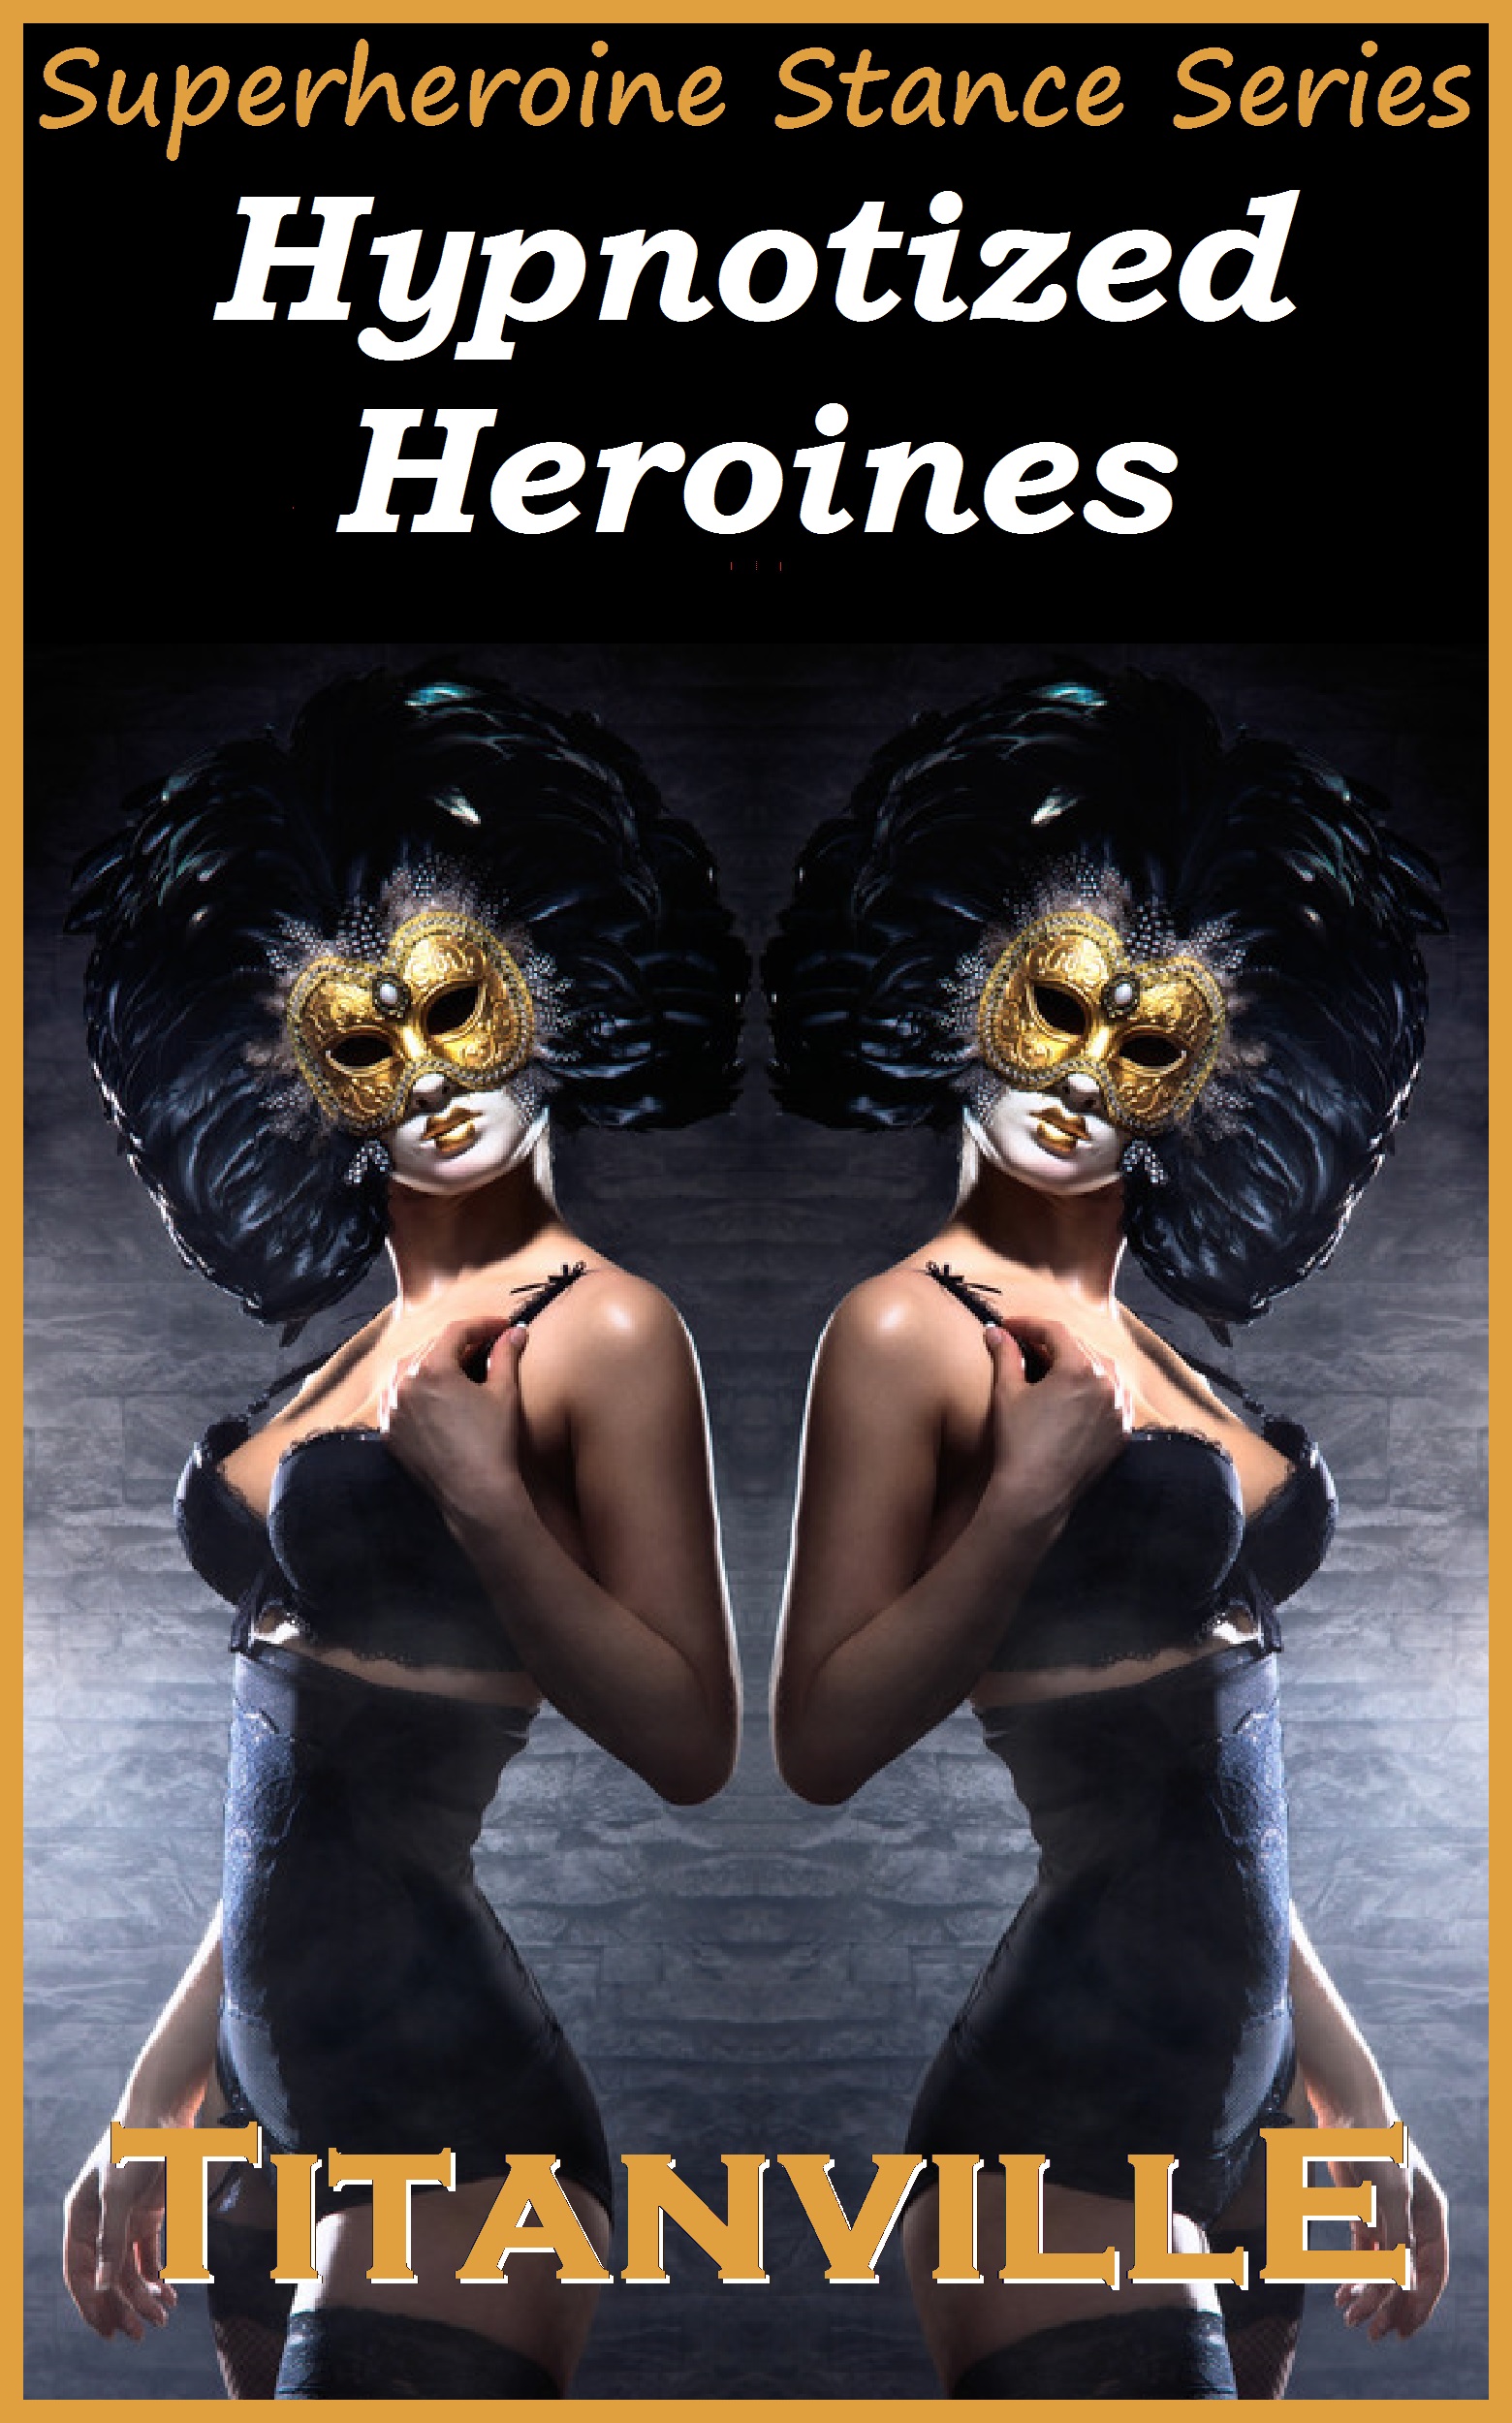 Heroine Hypnosis Porn - Smashwords â€“ Hypnotized Heroines (Superheroine Stance Series ...